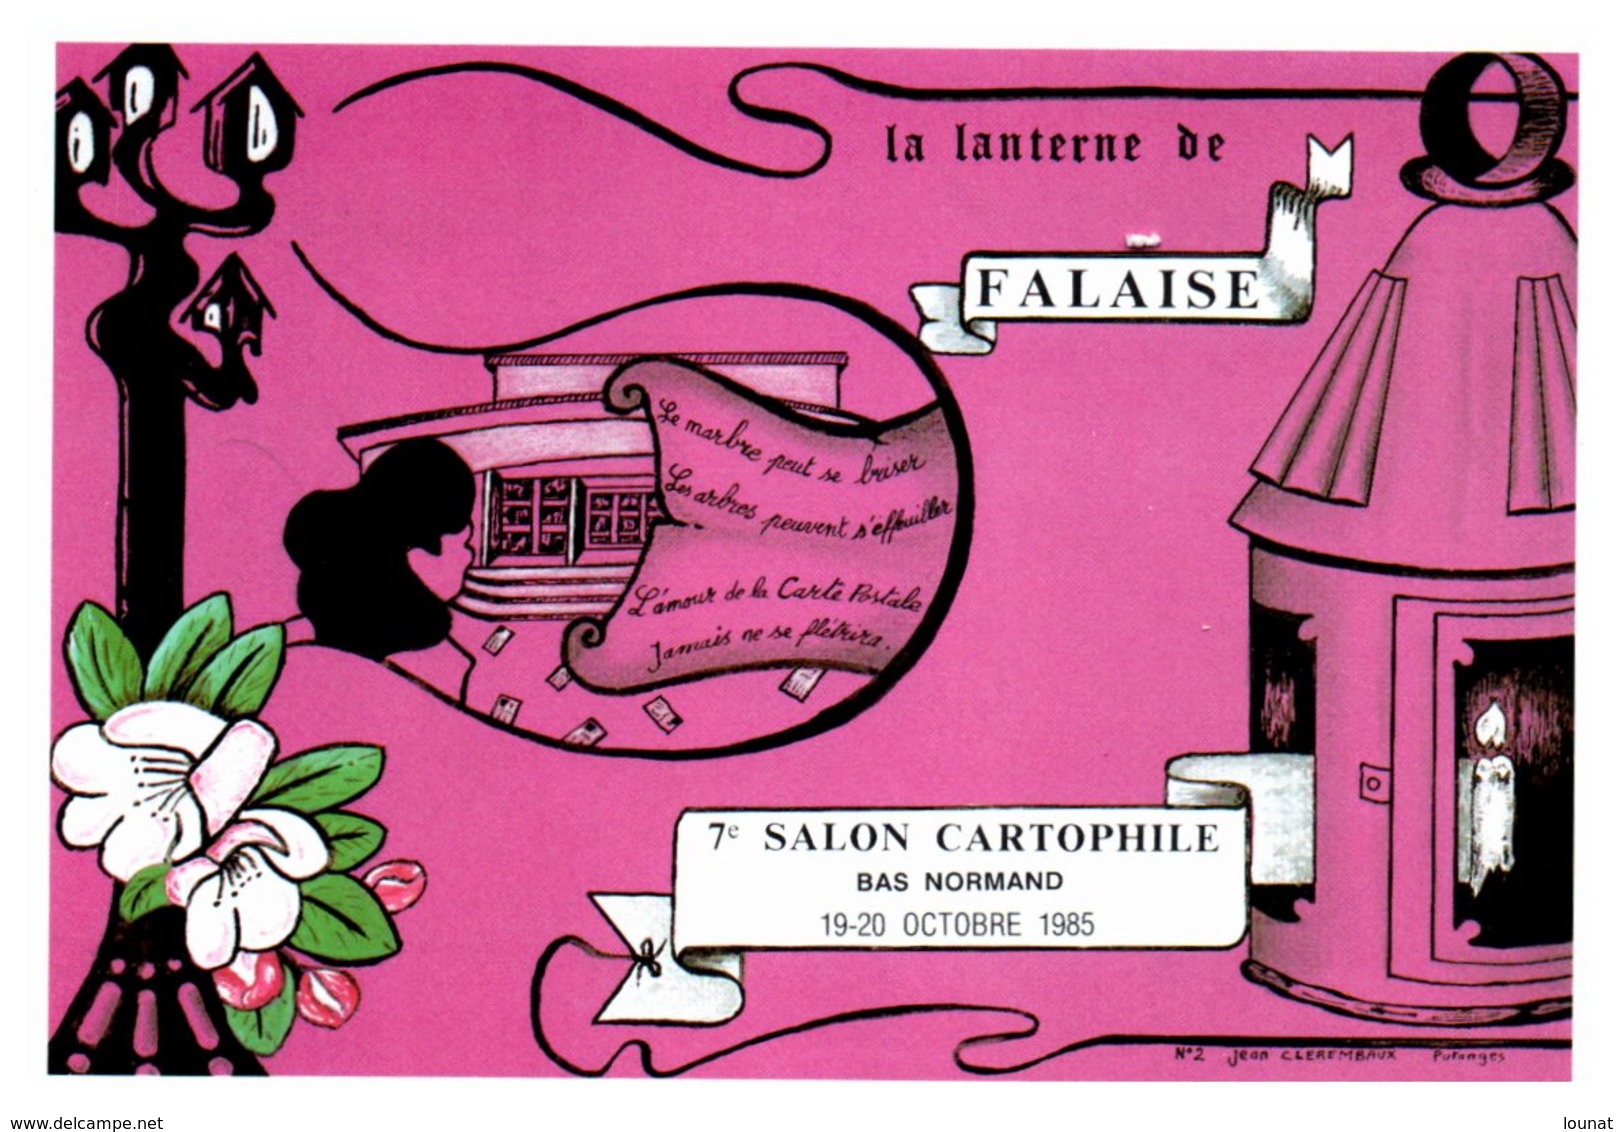 Bourse Et Salon De Collection - FALAISE - La Lanterne De Falaise - 7 ème Salon Cartophile  - Année 1985 - Bolsas Y Salón Para Coleccionistas